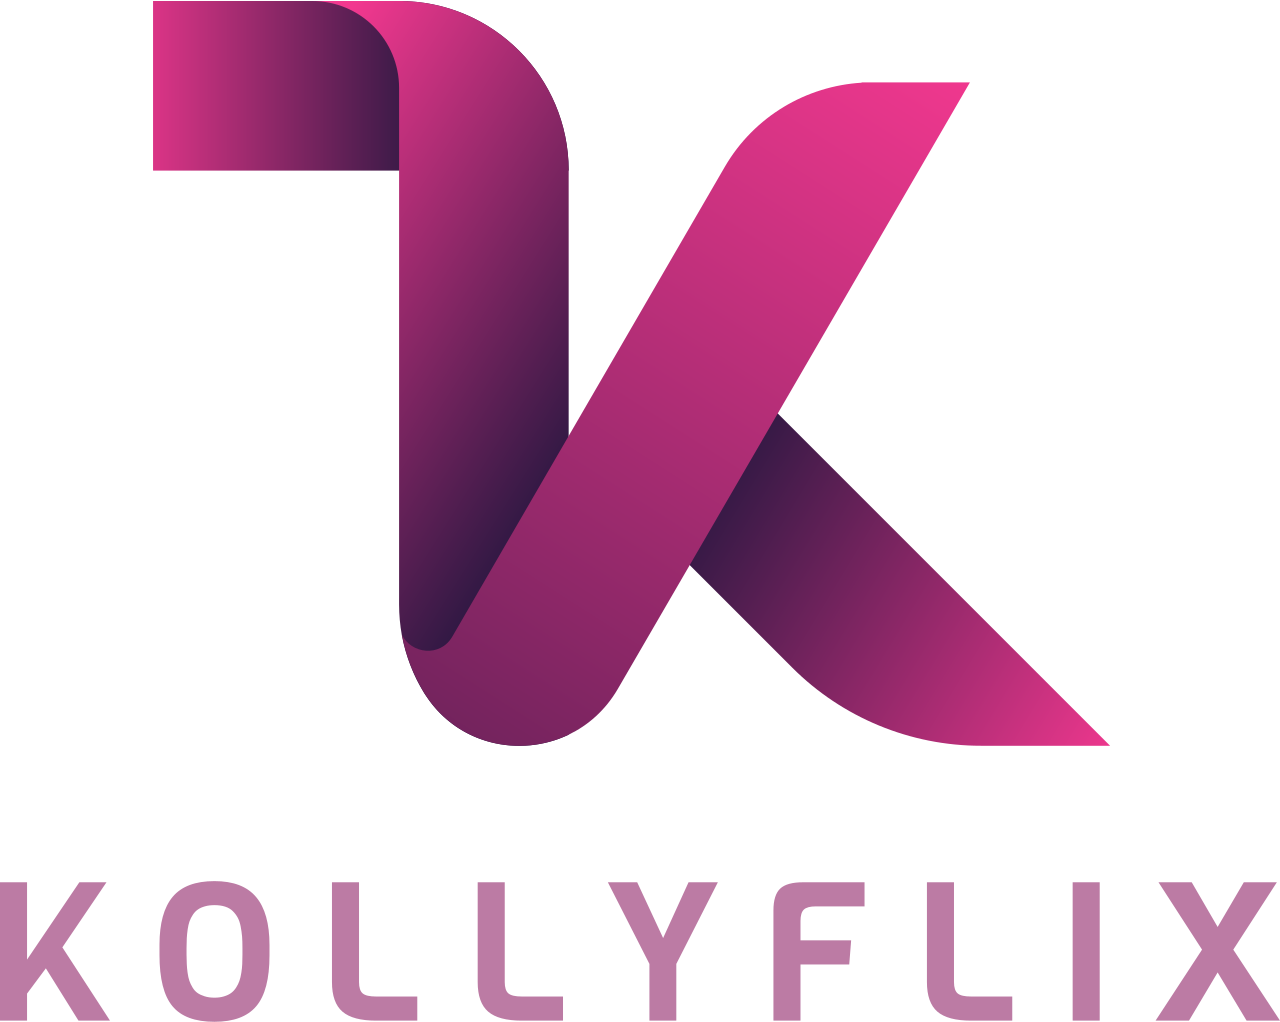 kollyflix's logo